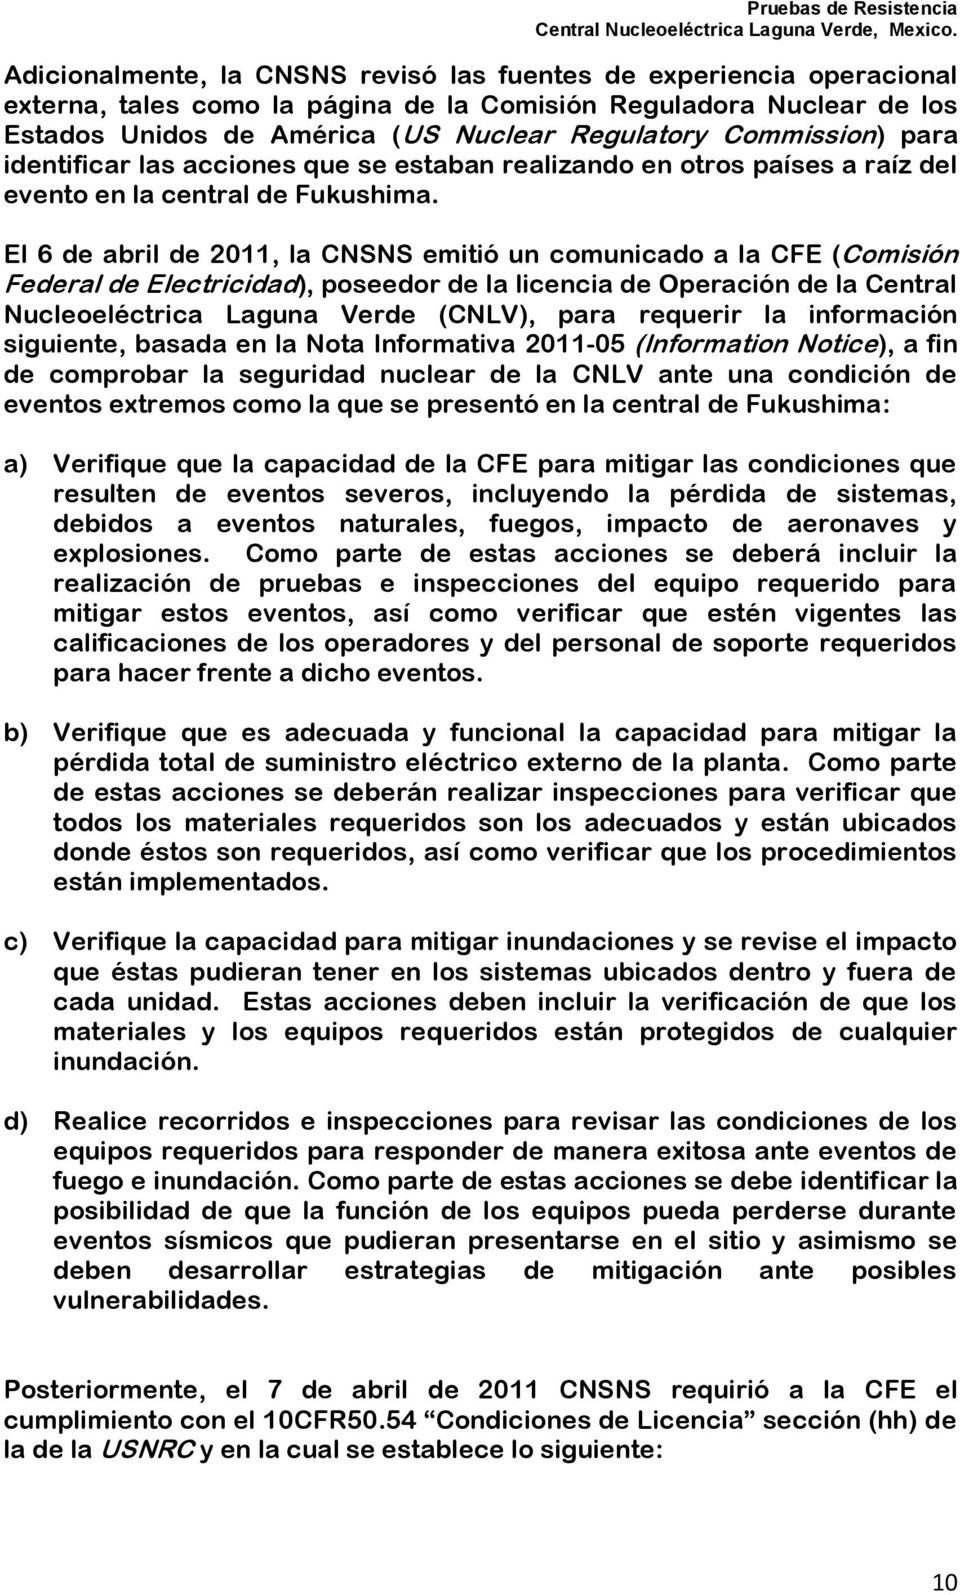 El 6 de abril de 2011, la CNSNS emitió un comunicado a la CFE (Comisión Federal de Electricidad), poseedor de la licencia de Operación de la Central Nucleoeléctrica Laguna Verde (CNLV), para requerir